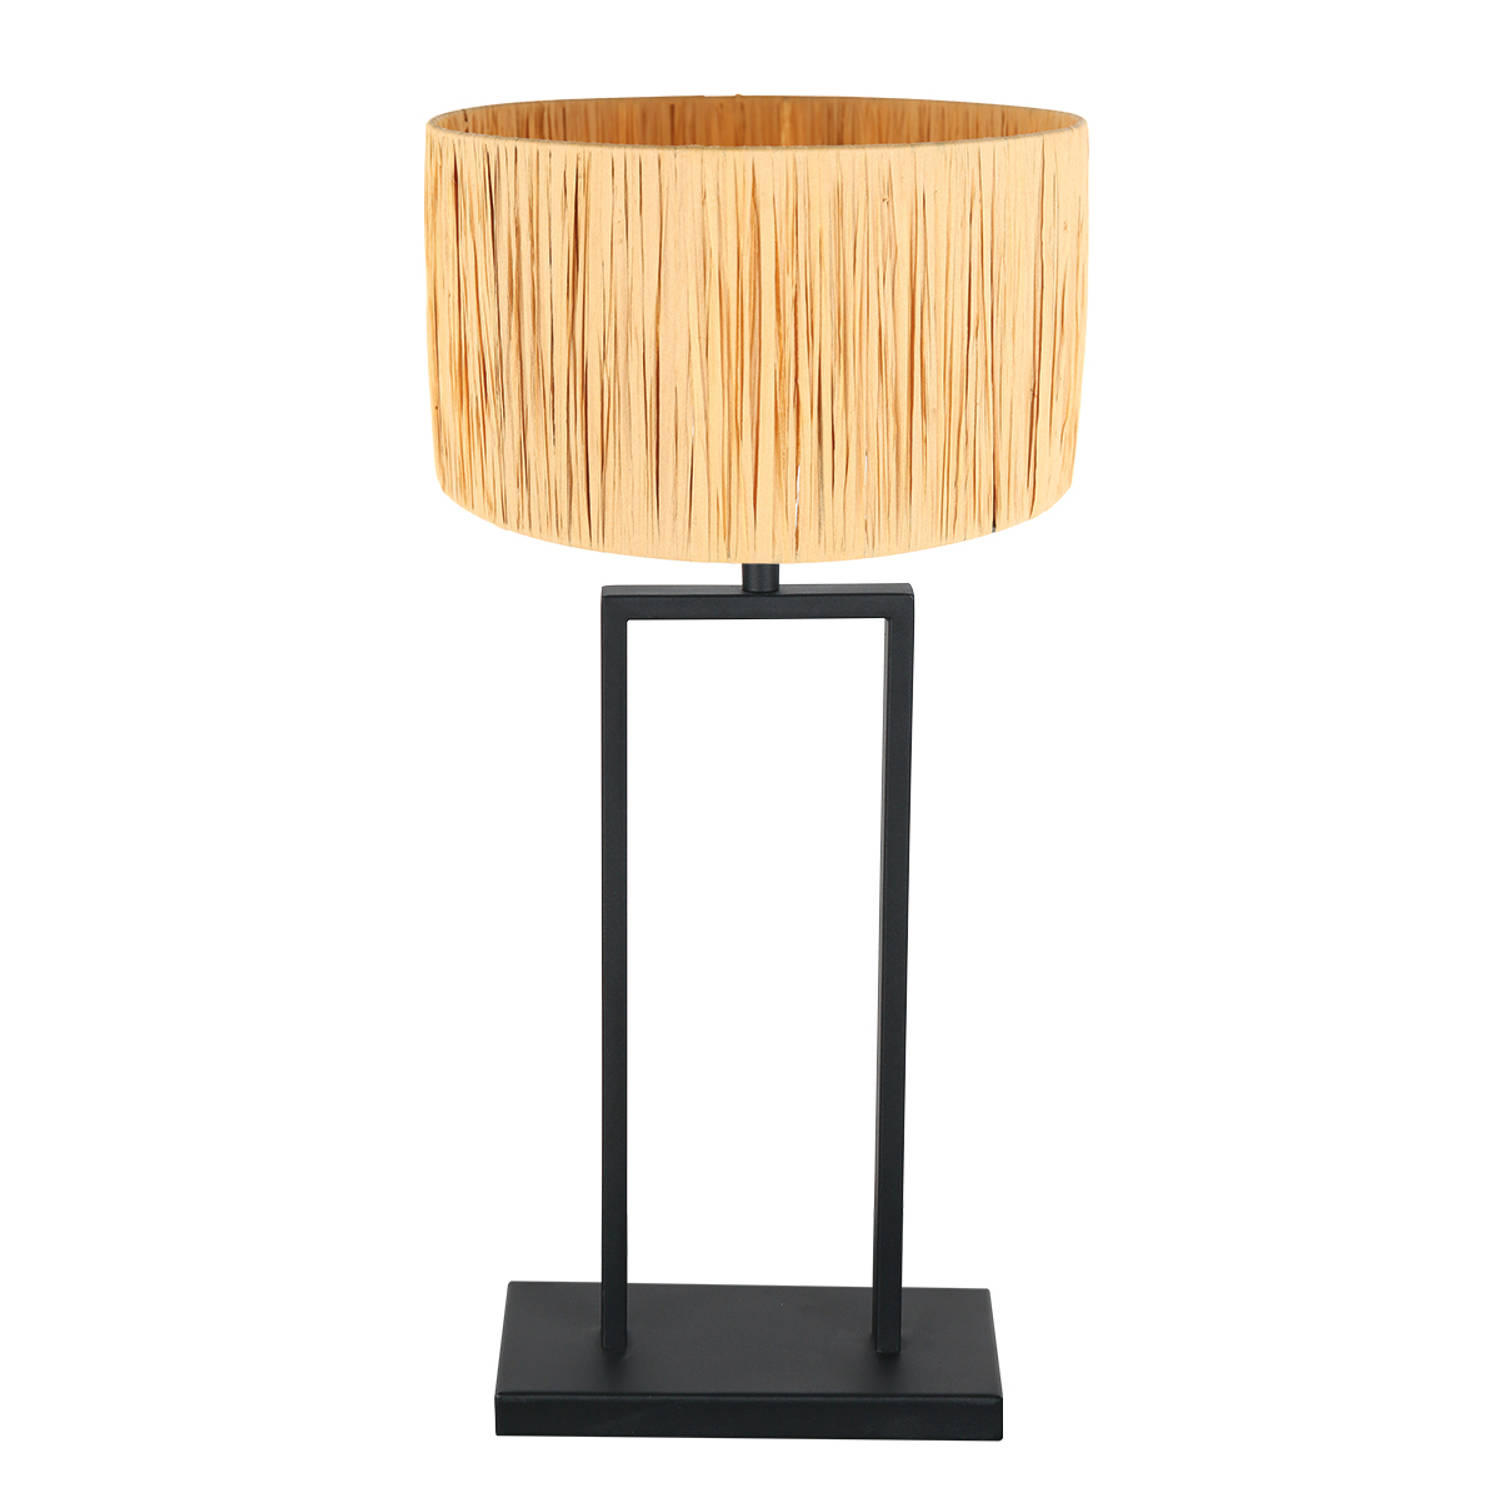 Tafellamp Stang | 1-lichts | naturel / zwart | E27 | modern / industrieel design | woonkamer / slaapkamer | Ø 20 cm